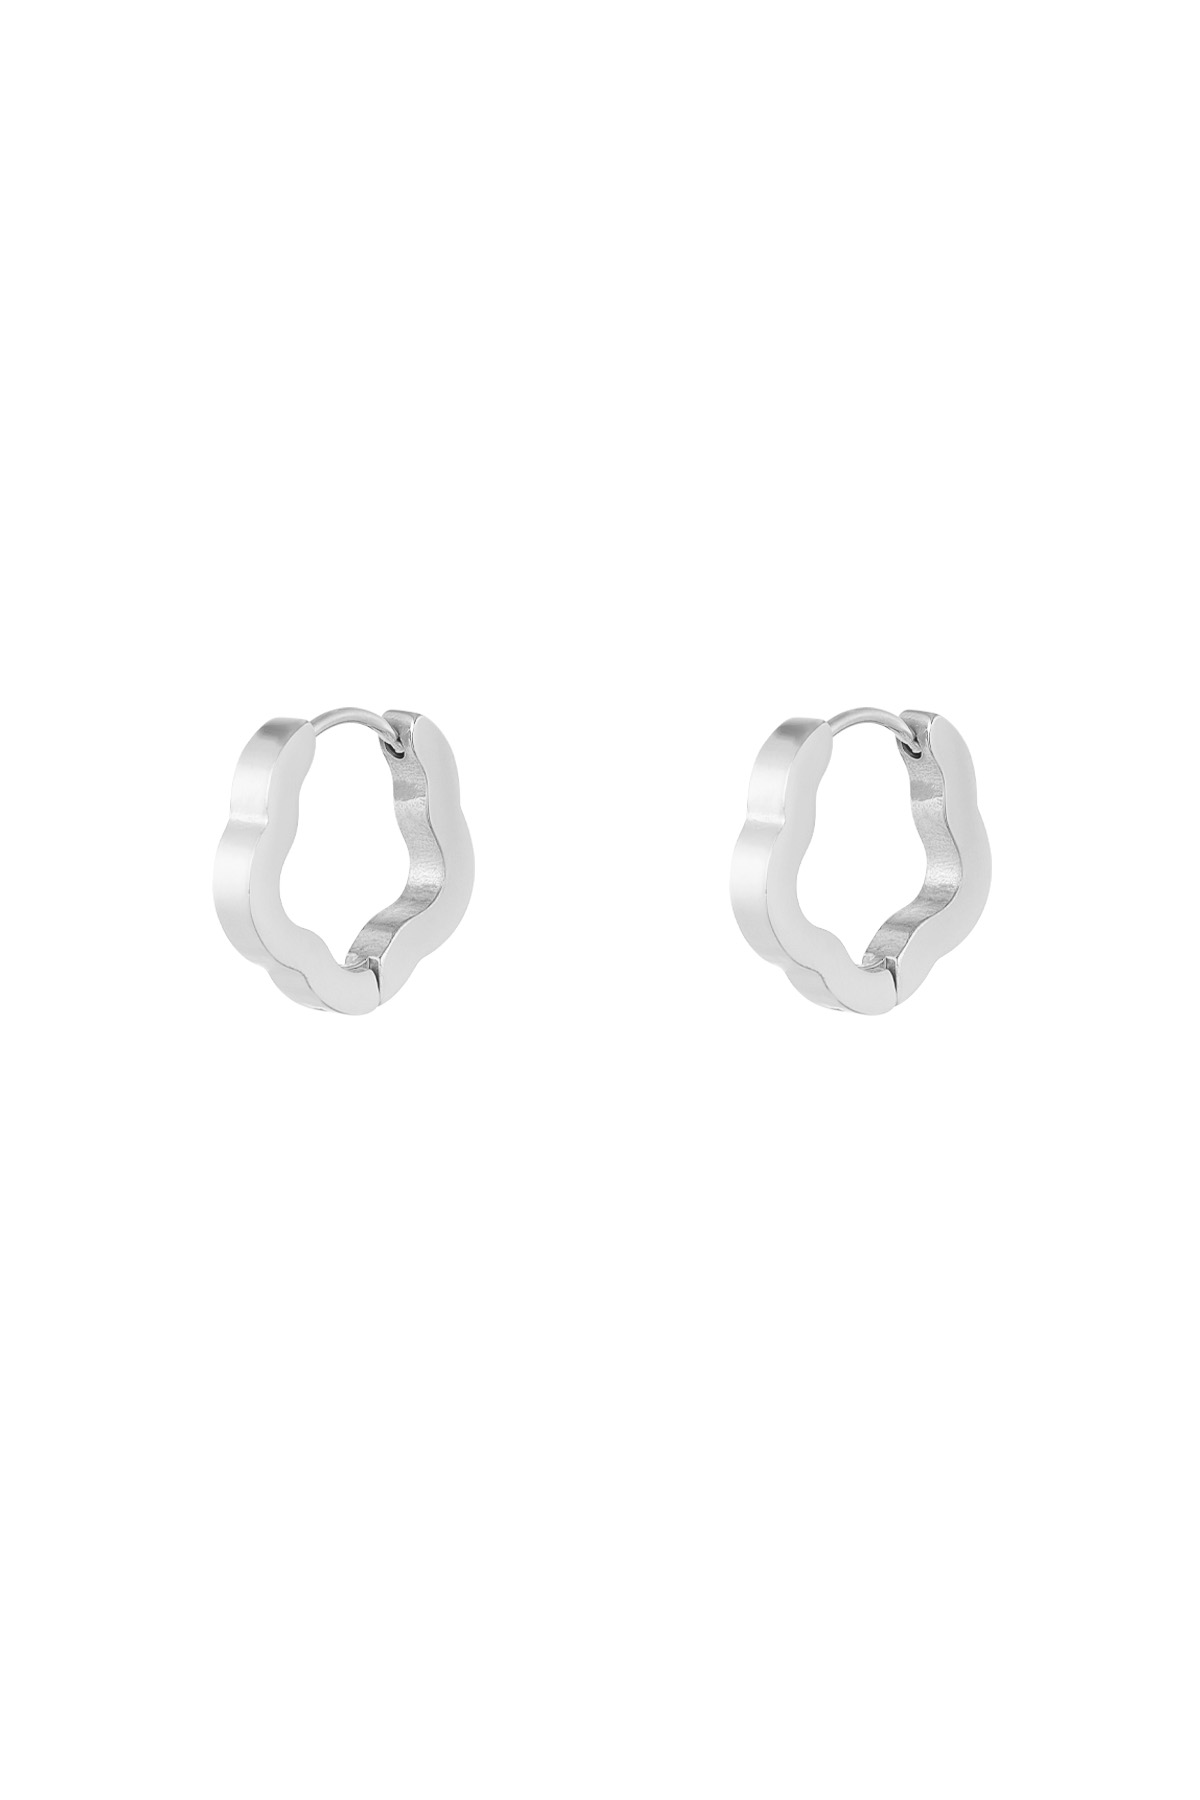 Basic flower shape earrings small - silver  h5 